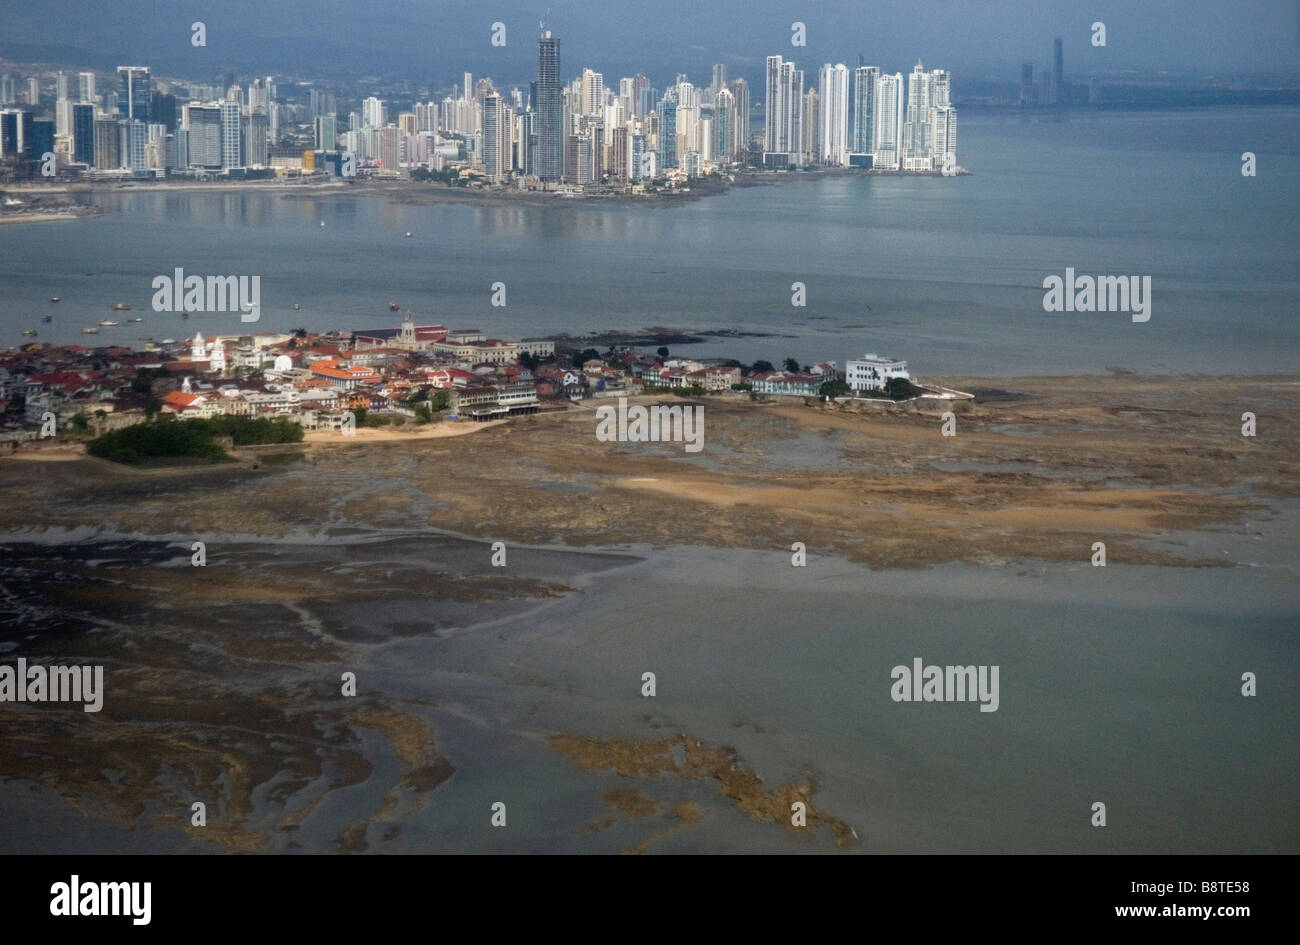 Panama City skyline avec la vieille ville vieille ville au premier plan Banque D'Images